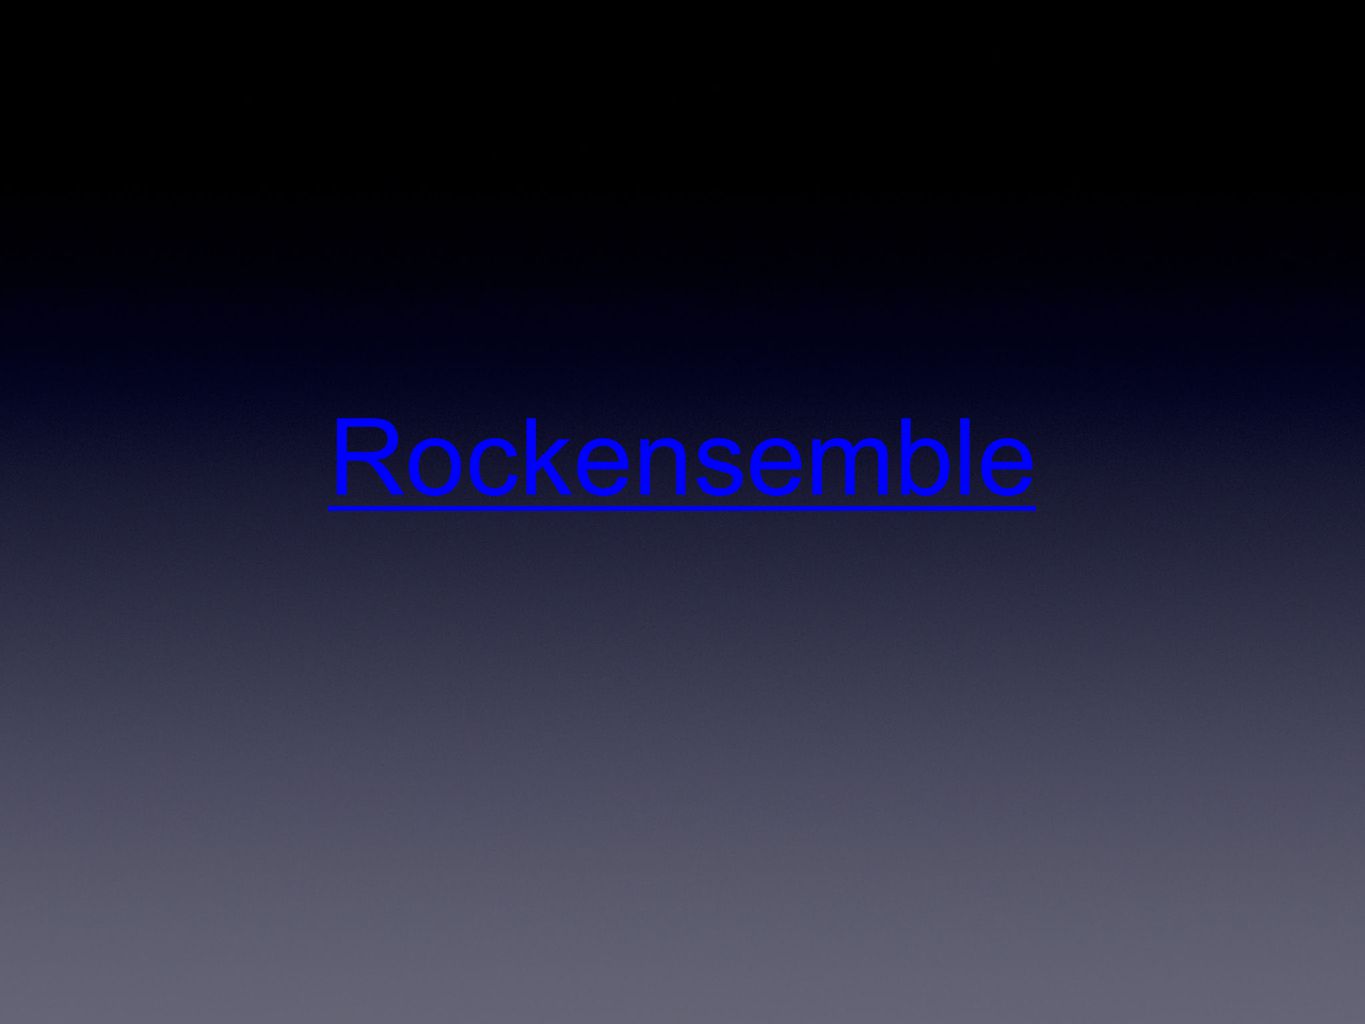 Rockensemble